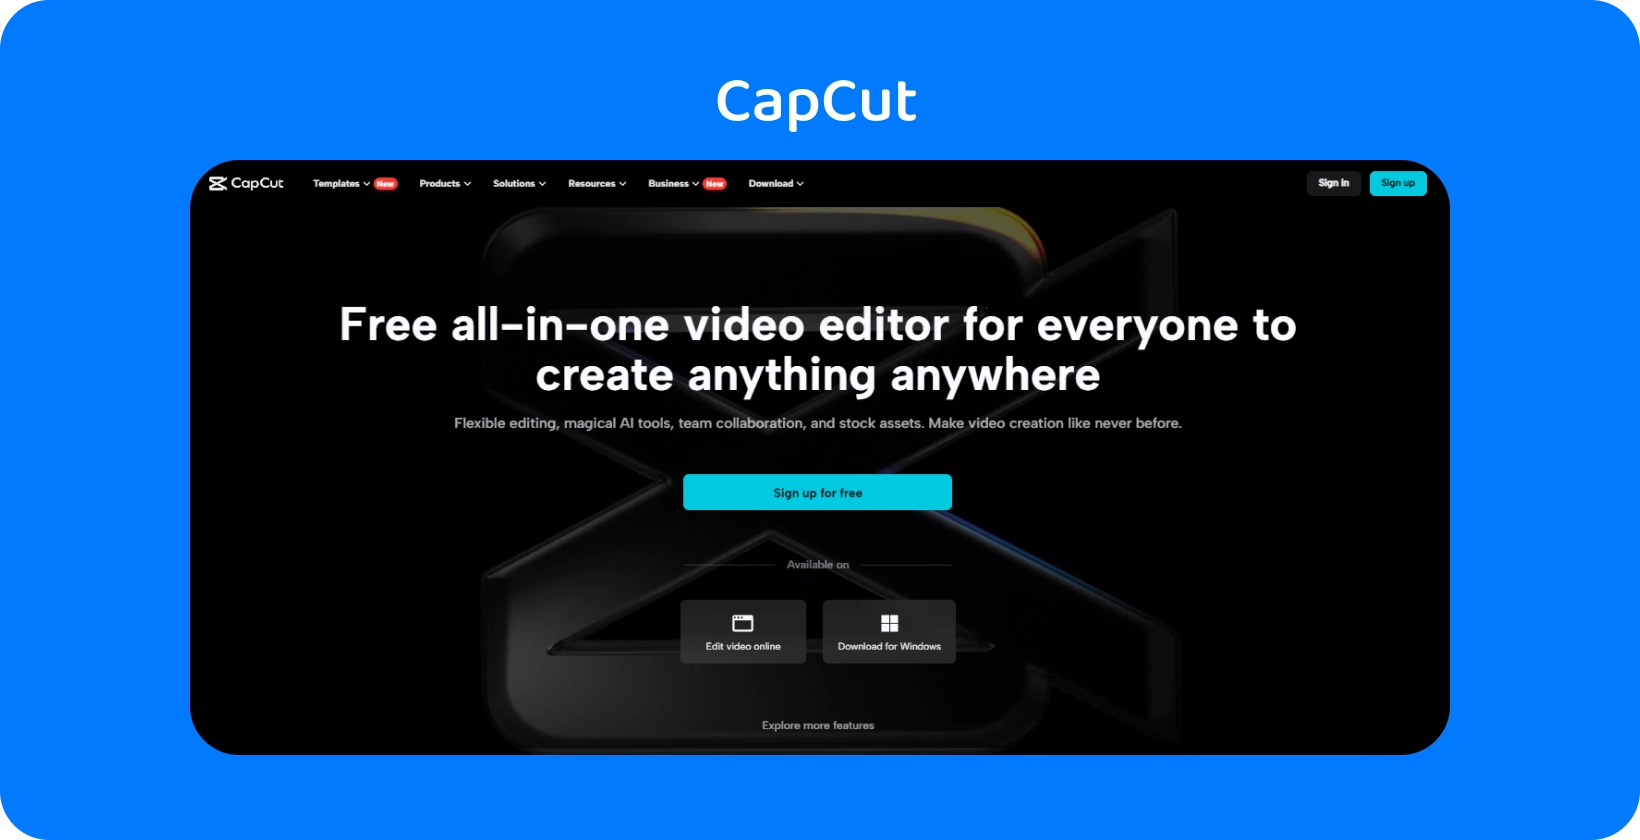 Η αρχική σελίδα του CapCut παρουσιάζει ένα δωρεάν πρόγραμμα επεξεργασίας βίντεο all-in-one για τη δημιουργία περιεχομένου σε οποιαδήποτε συσκευή, με σκοτεινό και κομψό σχεδιασμό.
